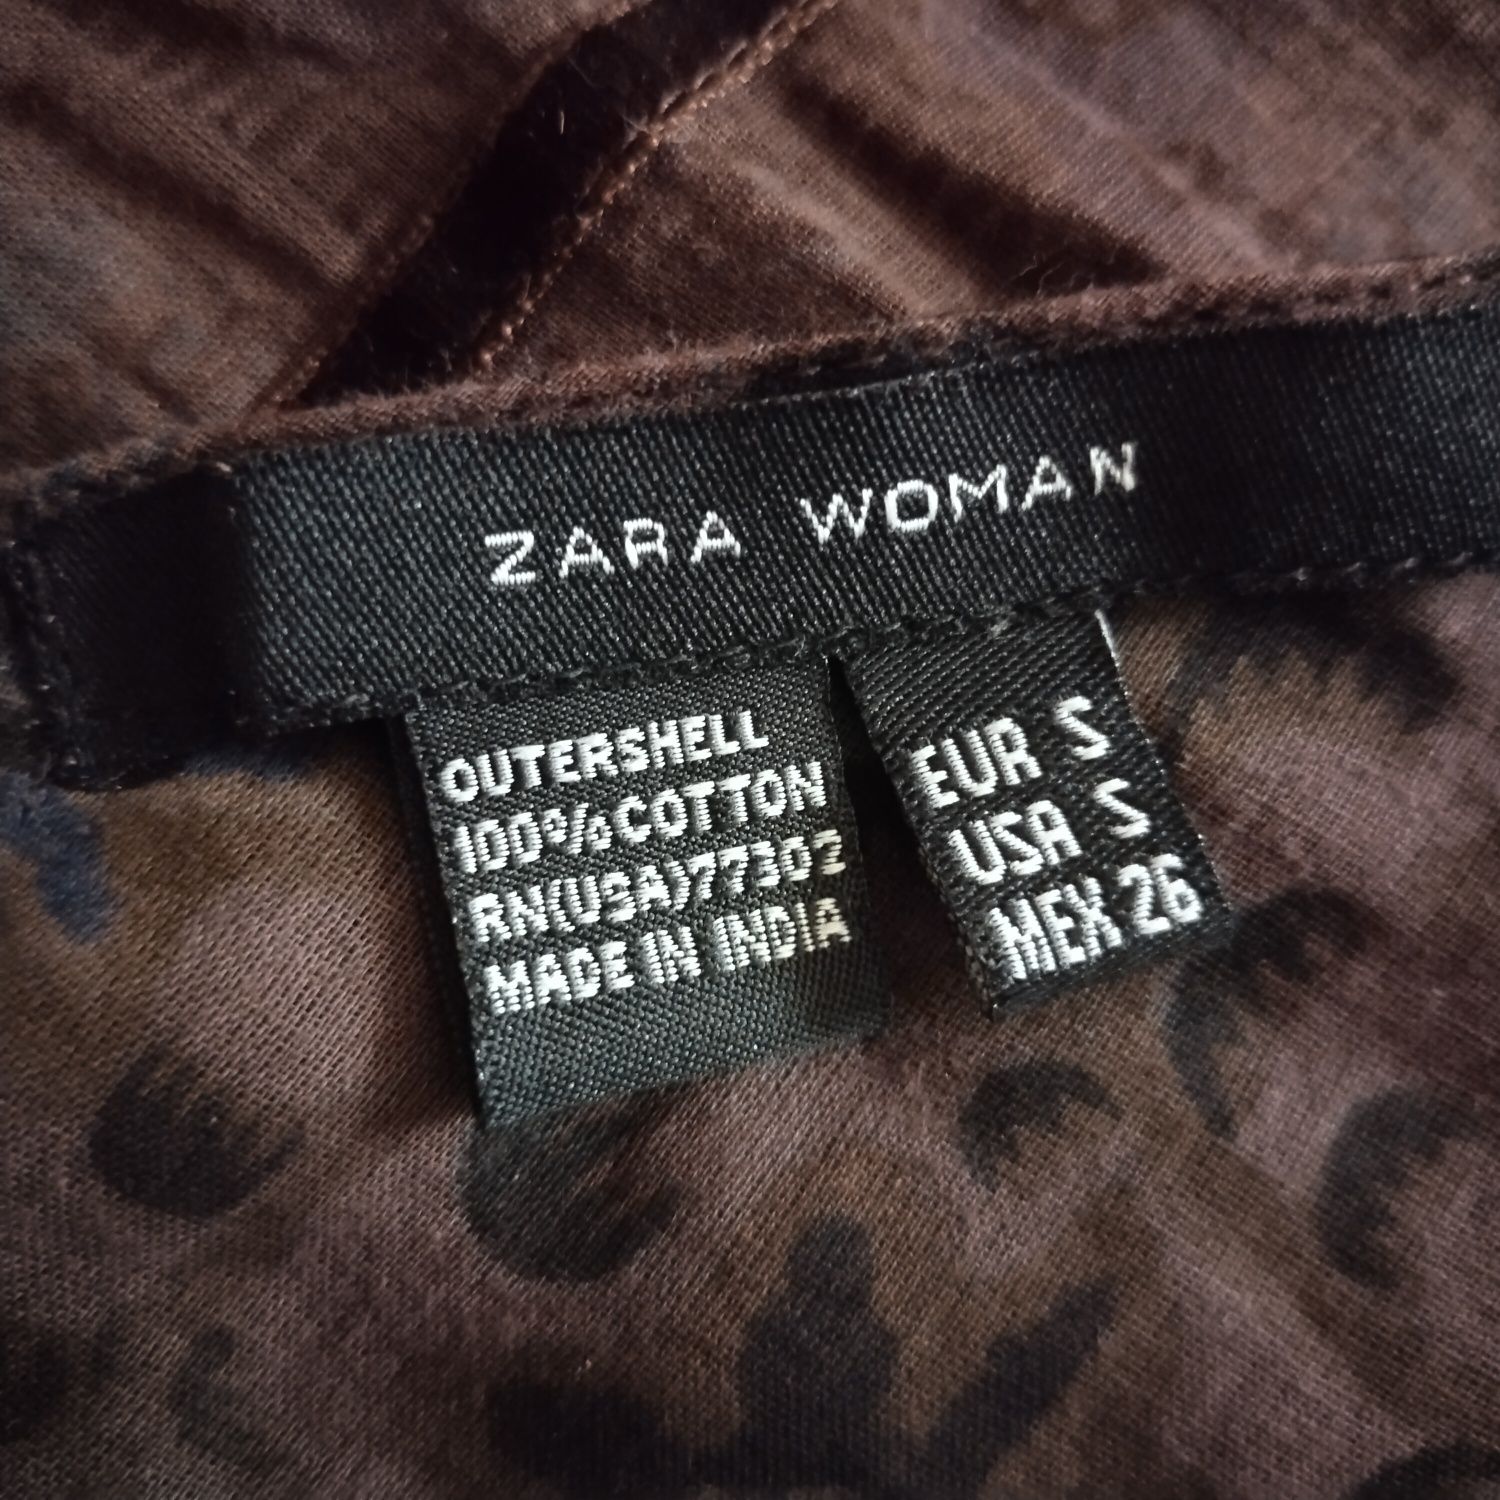 Zara длинная юбка в пол коричневая